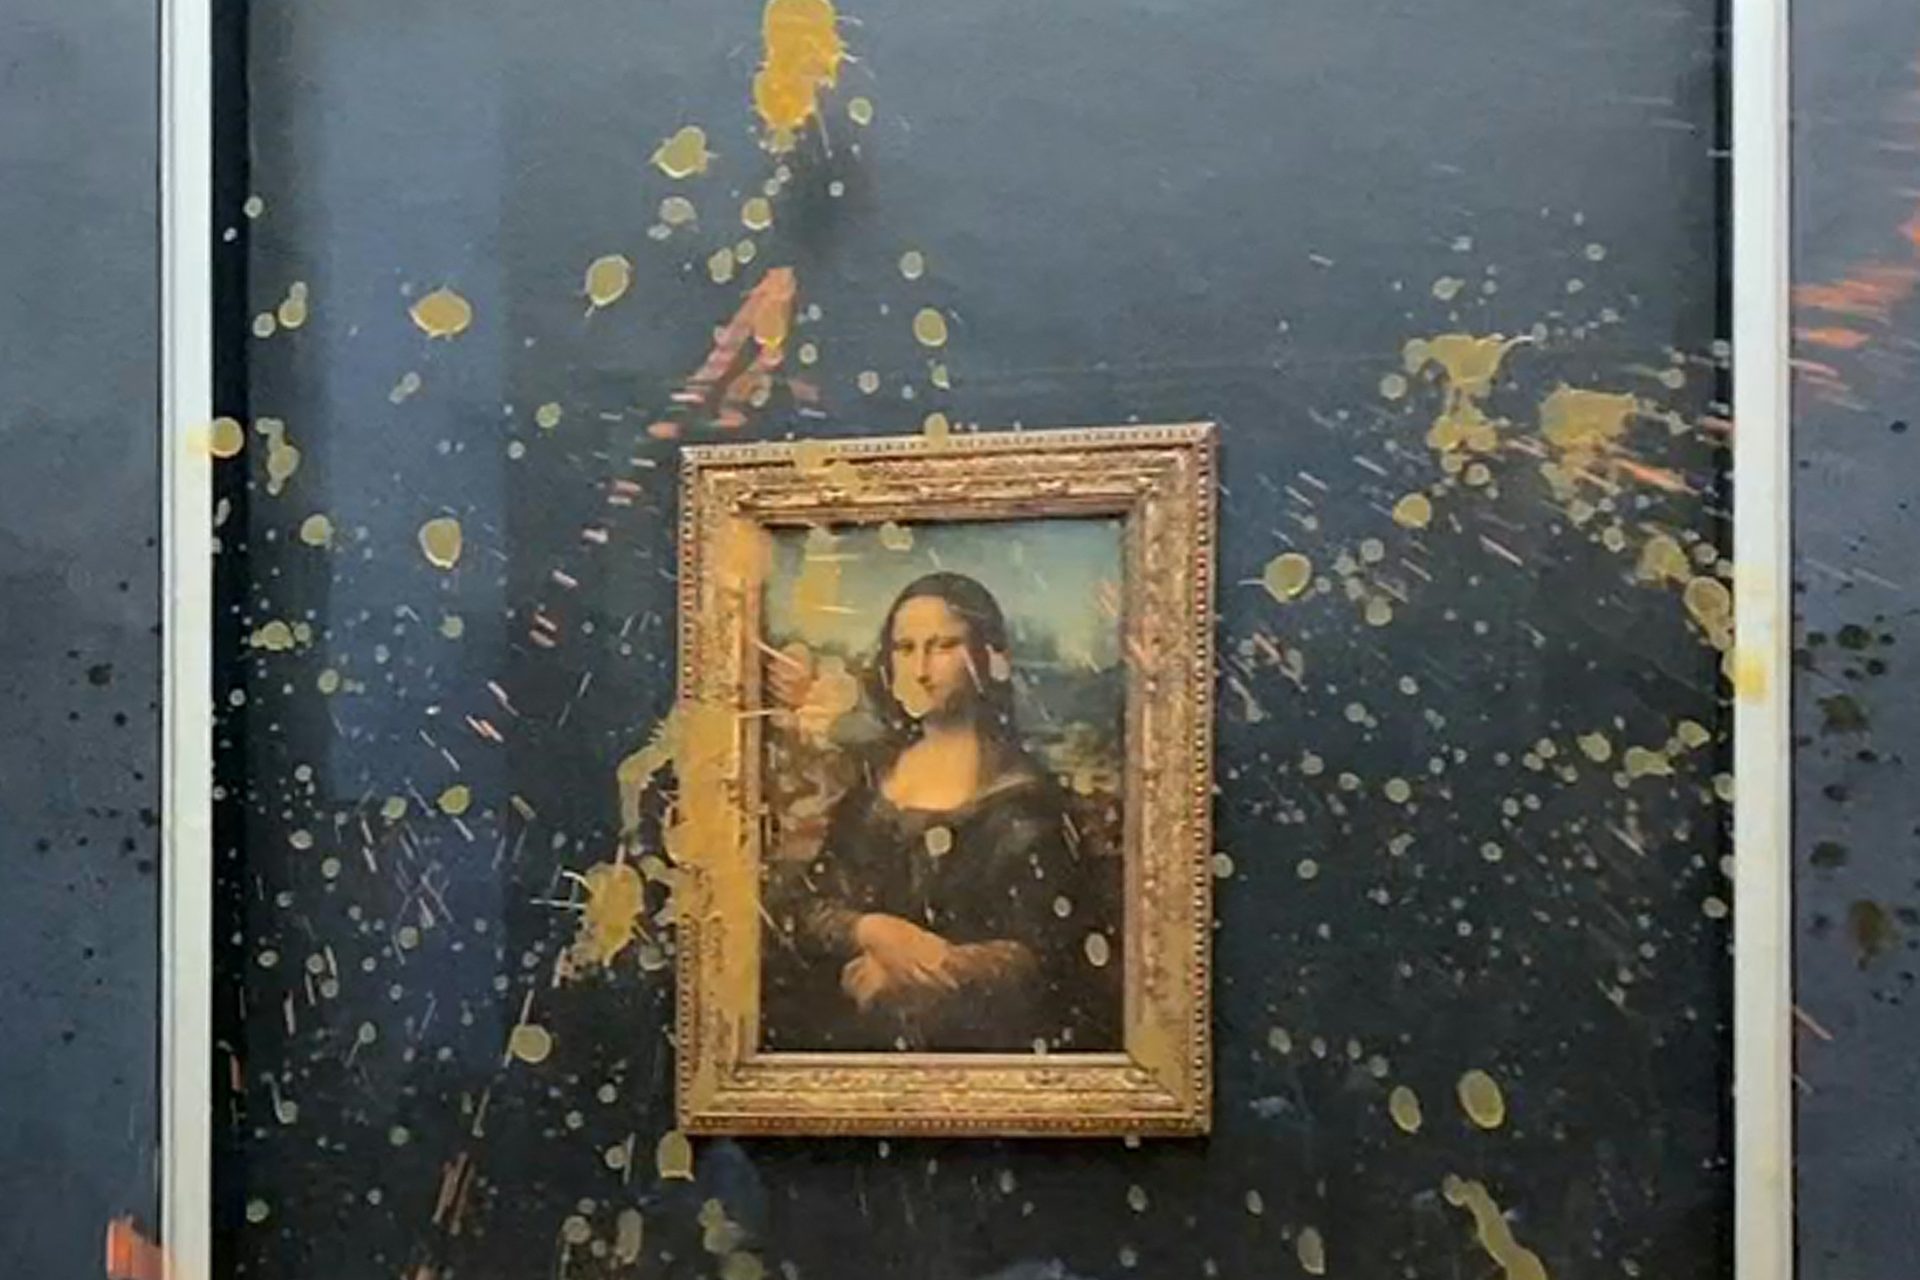 Œuvres d'art vandalisées : La Joconde aspergée de soupe par des activistes au Louvre